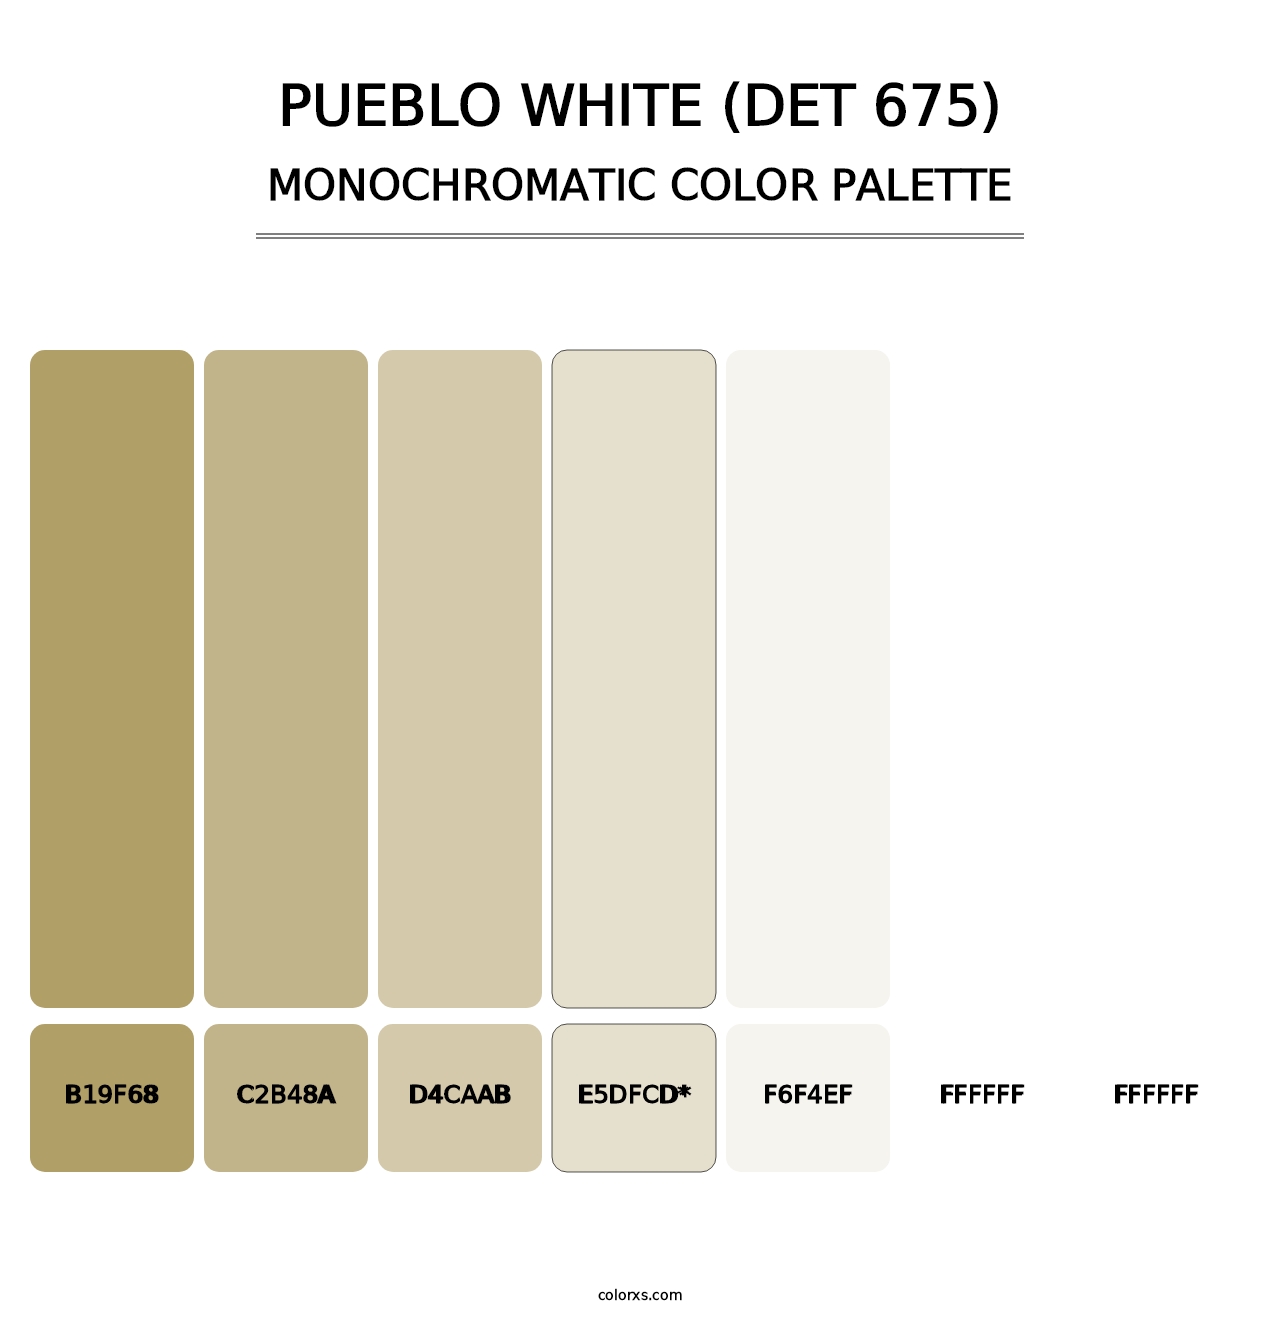 Pueblo White (DET 675) - Monochromatic Color Palette